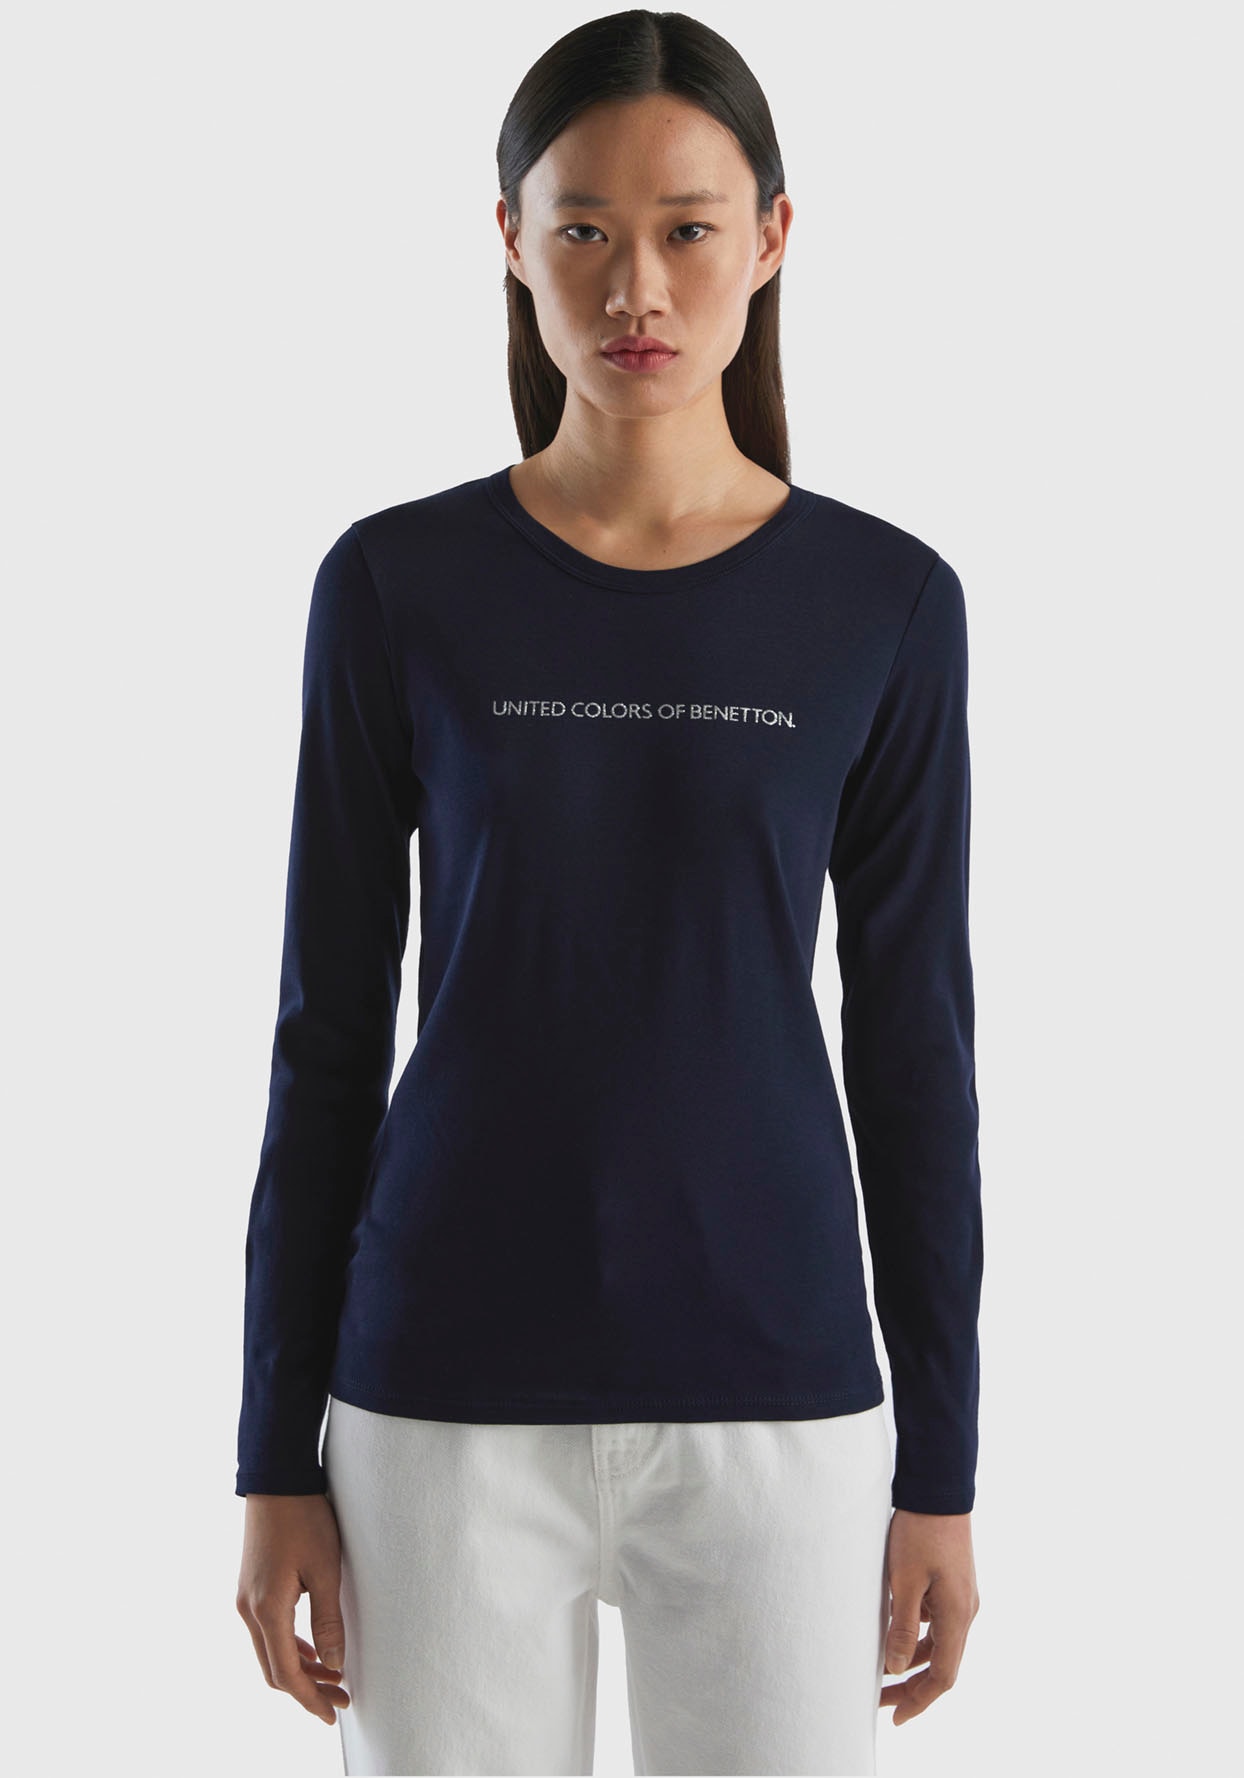 mit Labelprint versandkostenfrei Glitzereffekt Langarmshirt, kaufen of Colors Benetton United